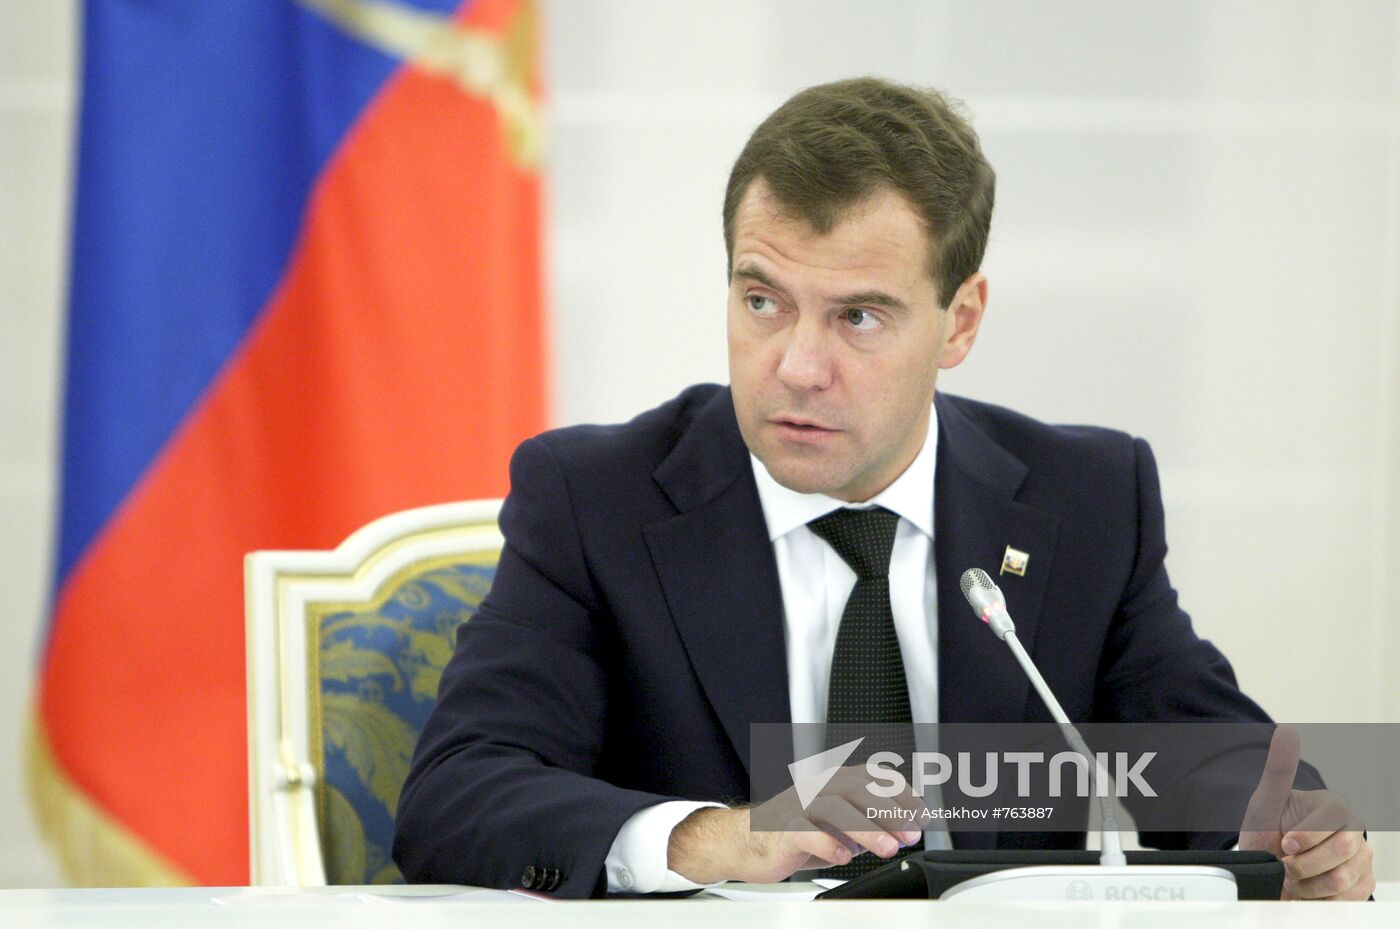 Dmitry Medvedev chairs meeting in Gorki